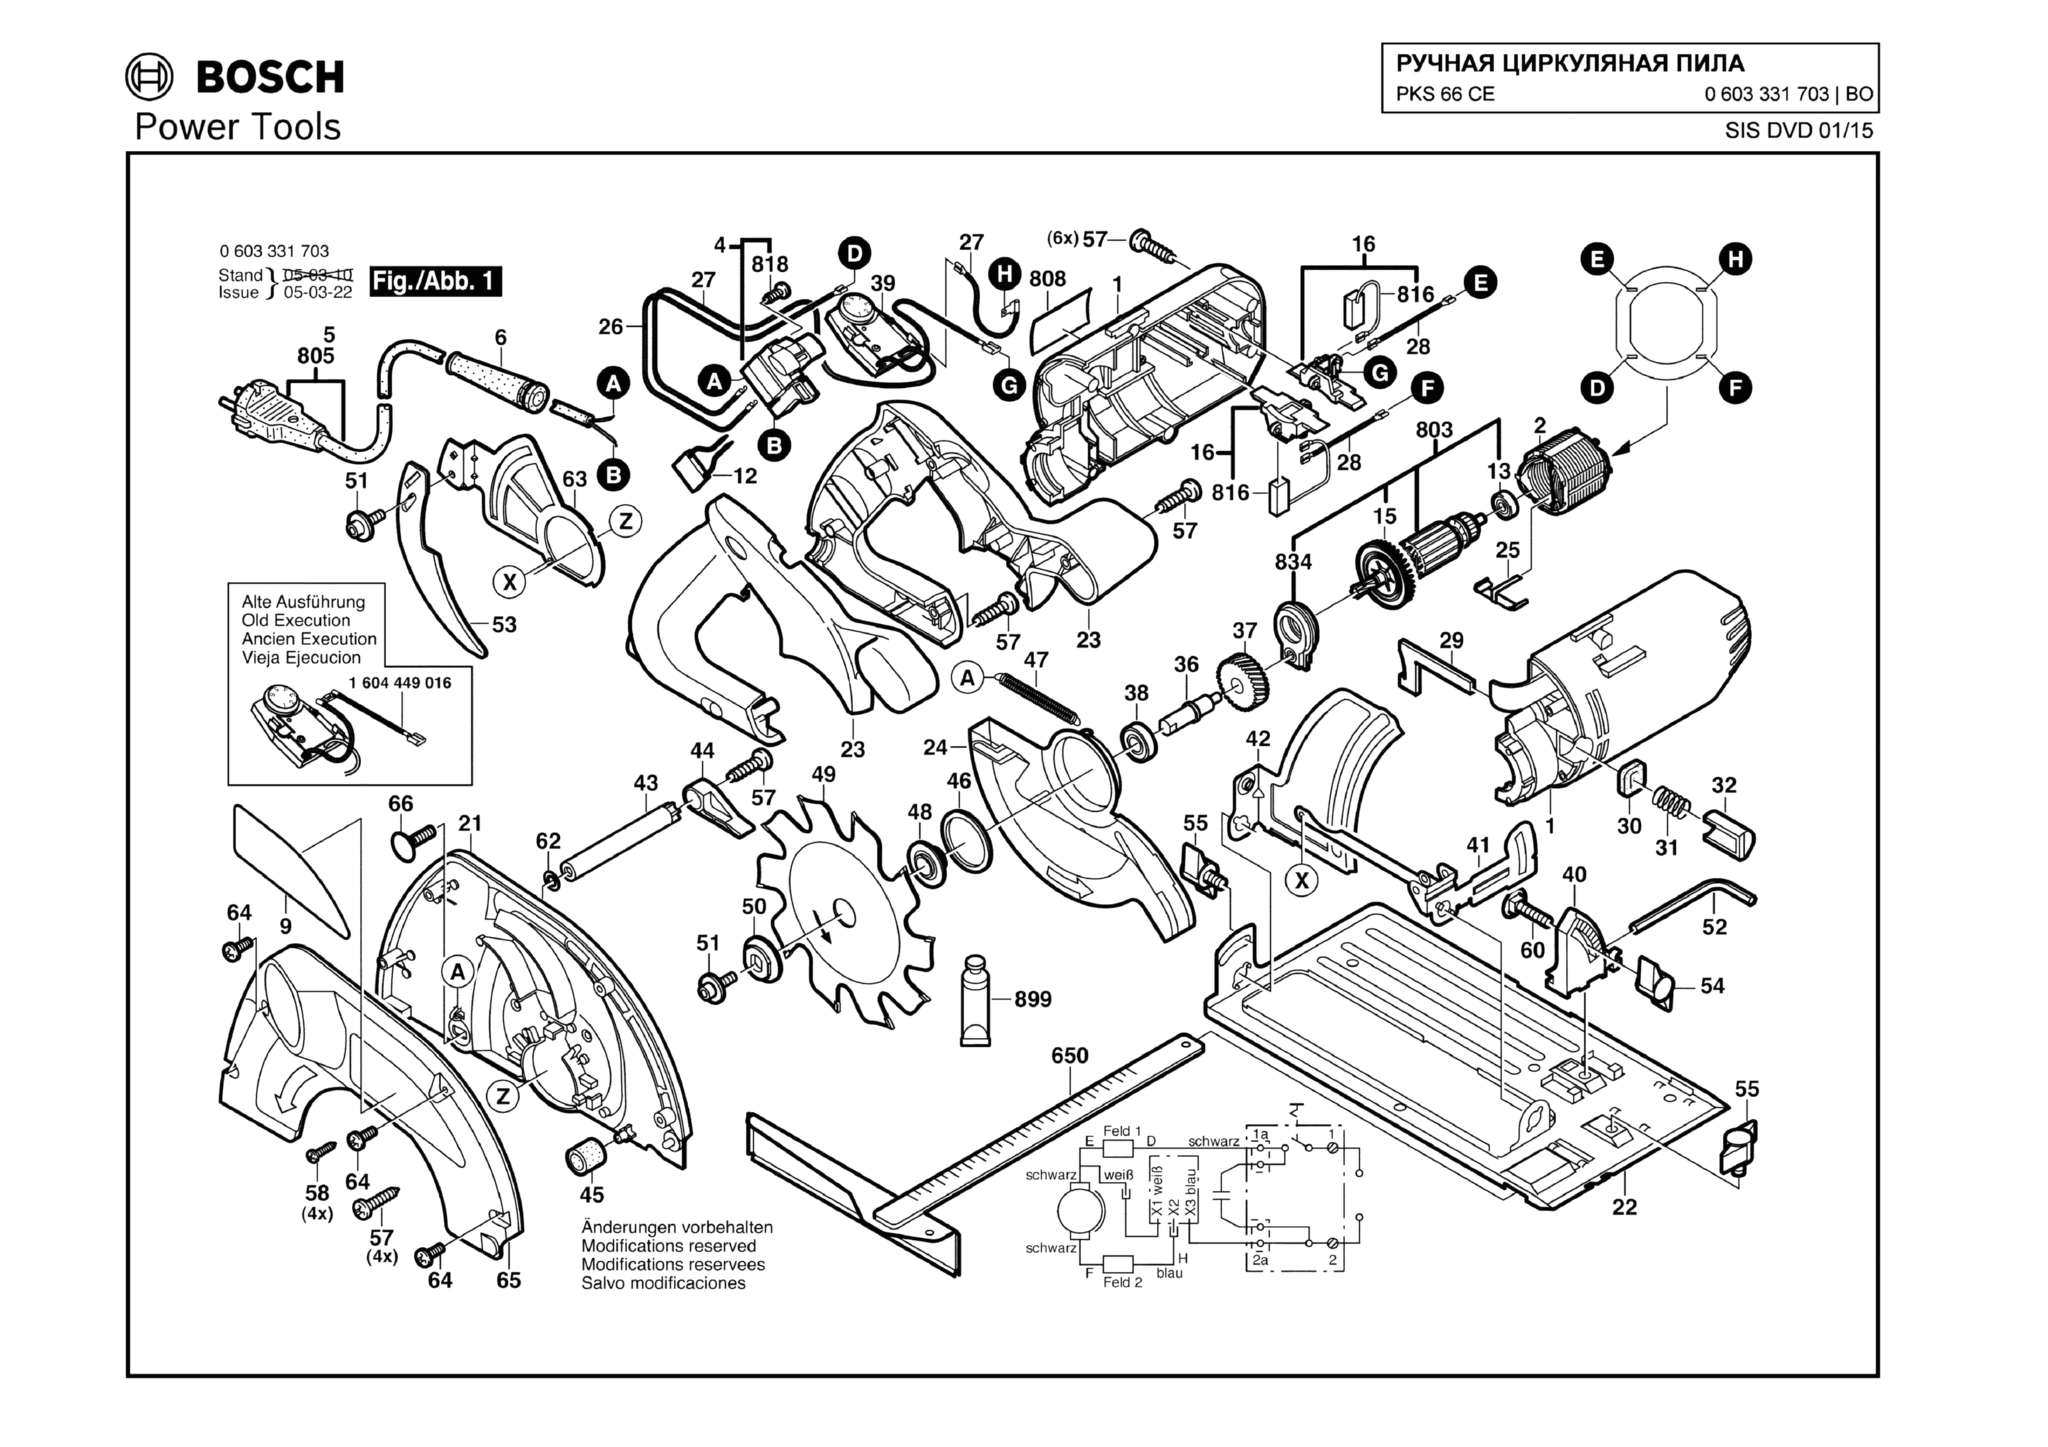 Запчасти, схема и деталировка Bosch PKS 66 CE (ТИП 0603331703)